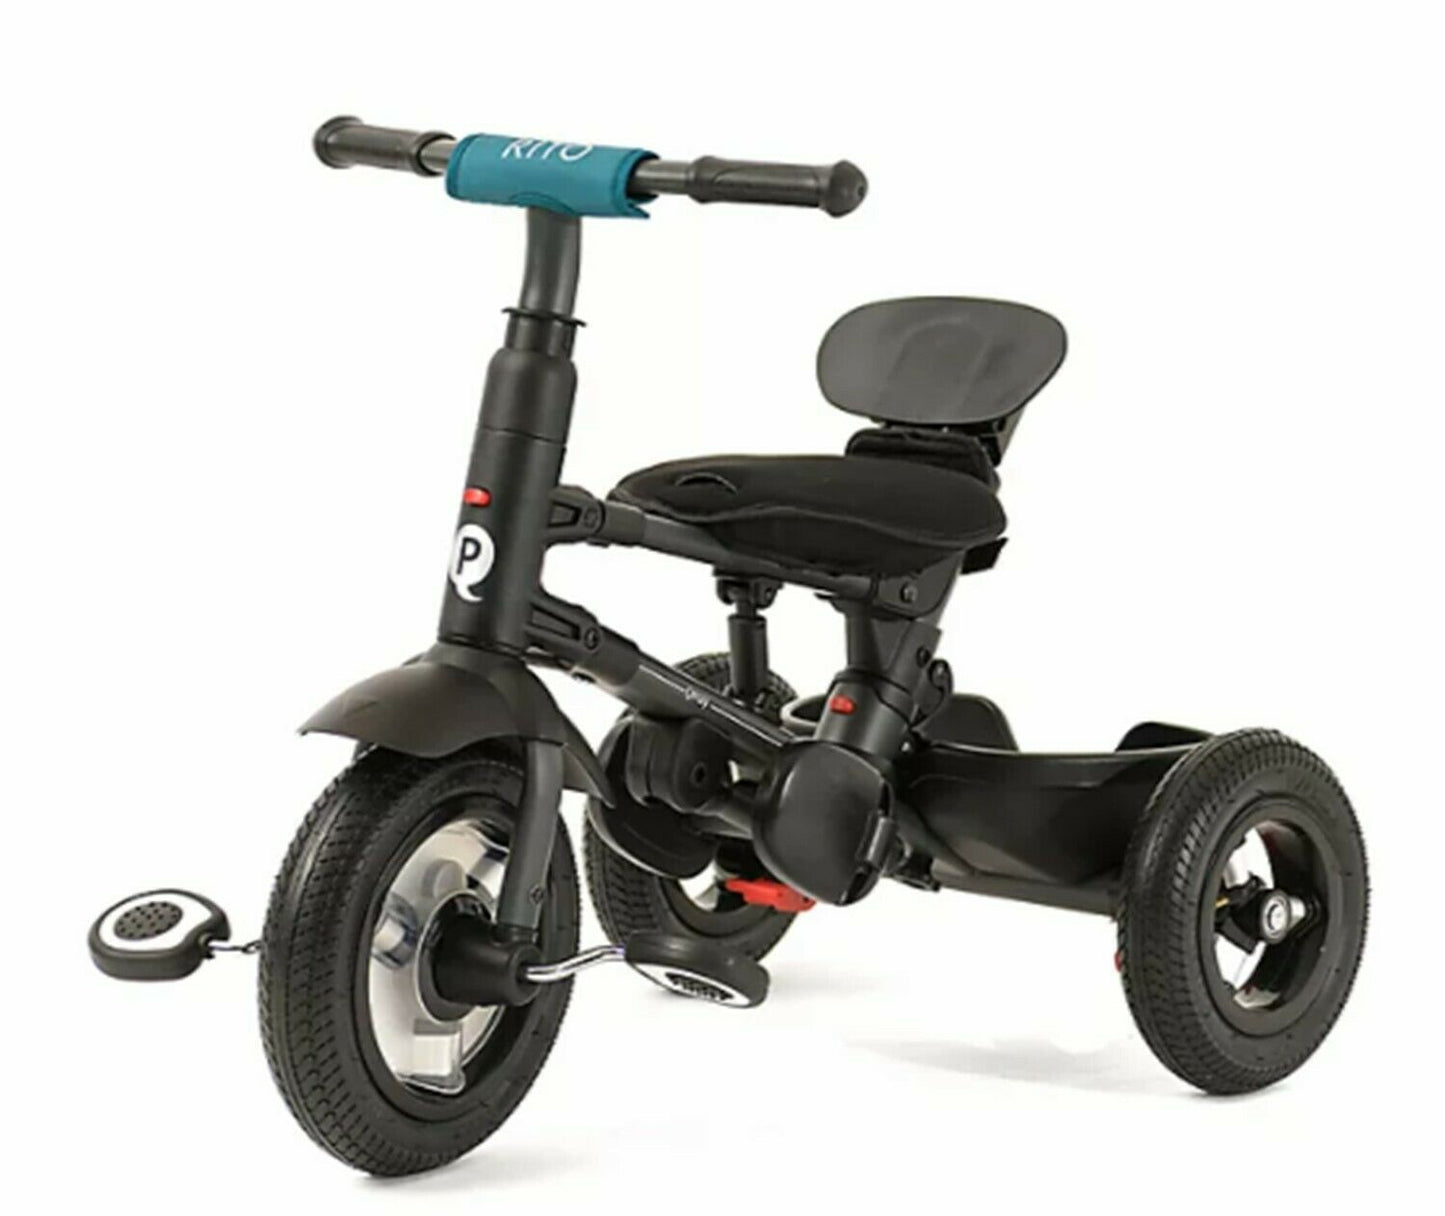 QPlay Rito Plus Folding Stroller Trike Kids Toddlers Riding - Teal